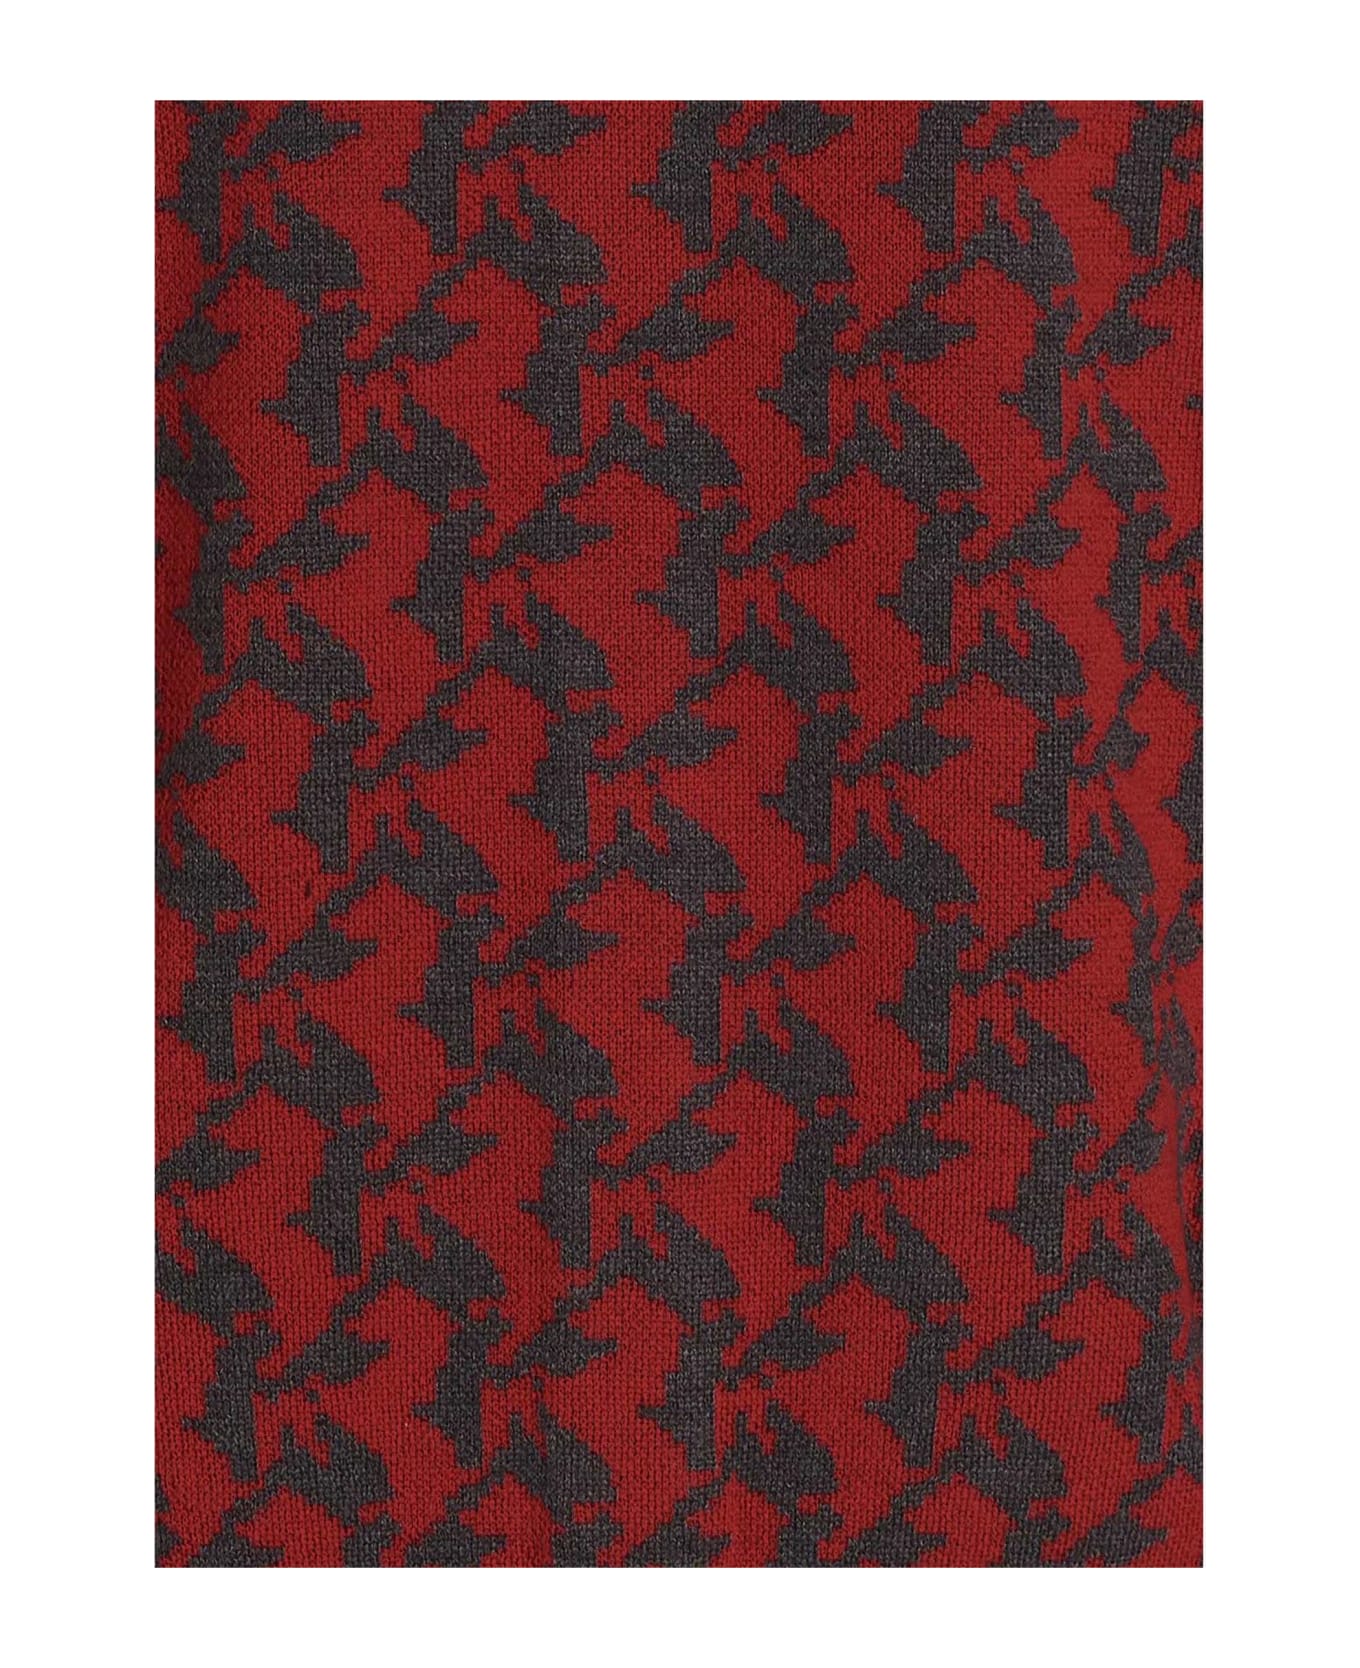 Ferrari 'cavallino' Cardigan - Red ウェア